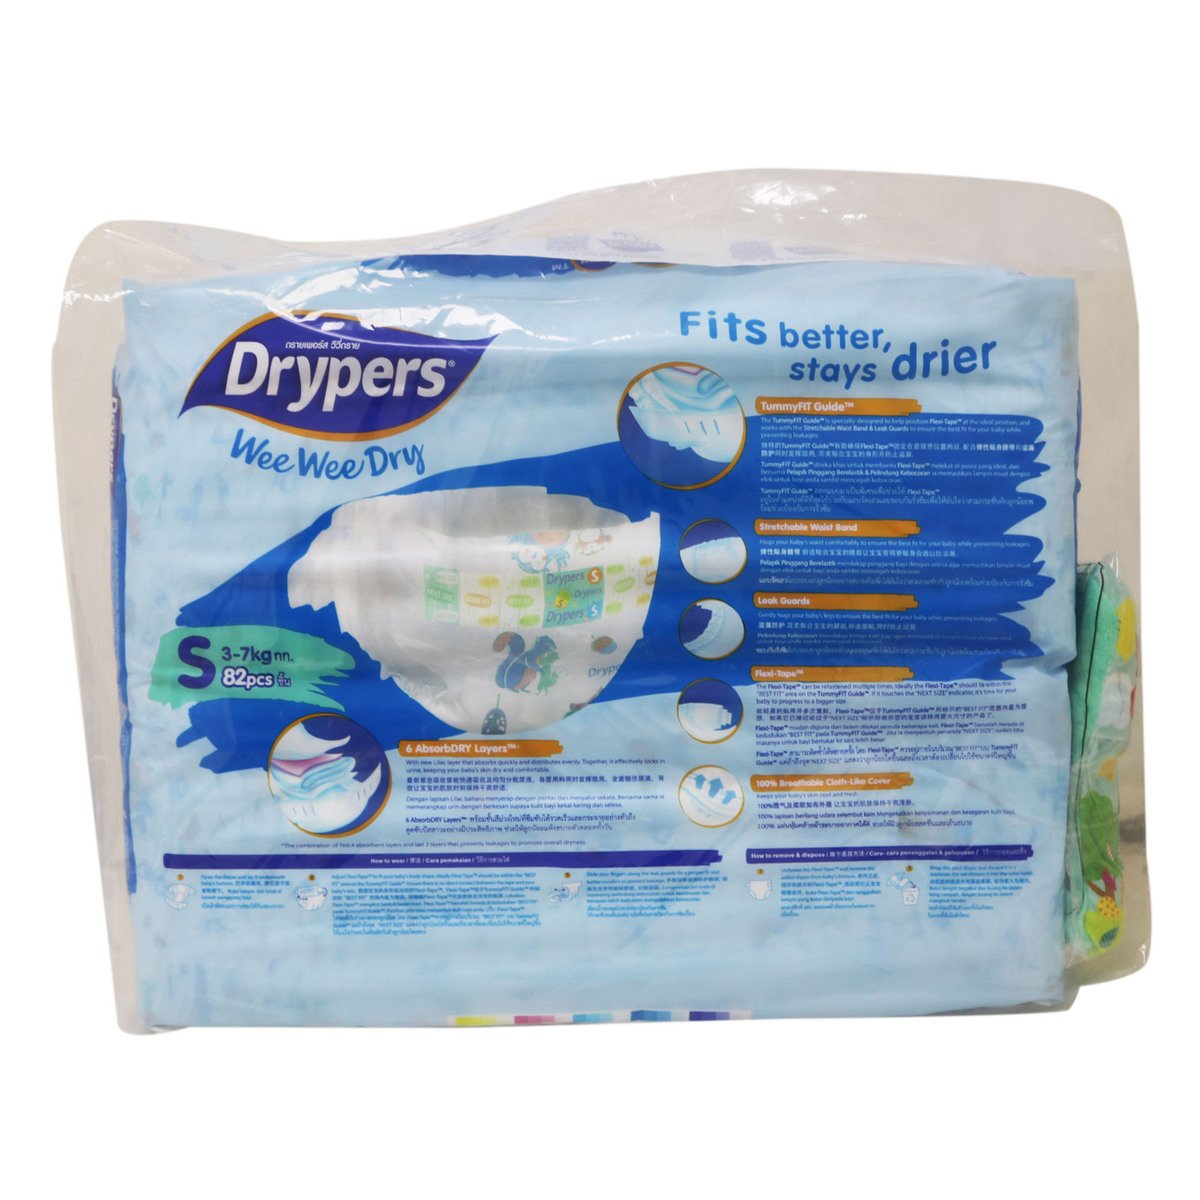 Drypers Wee Wee Dry S80 Counts